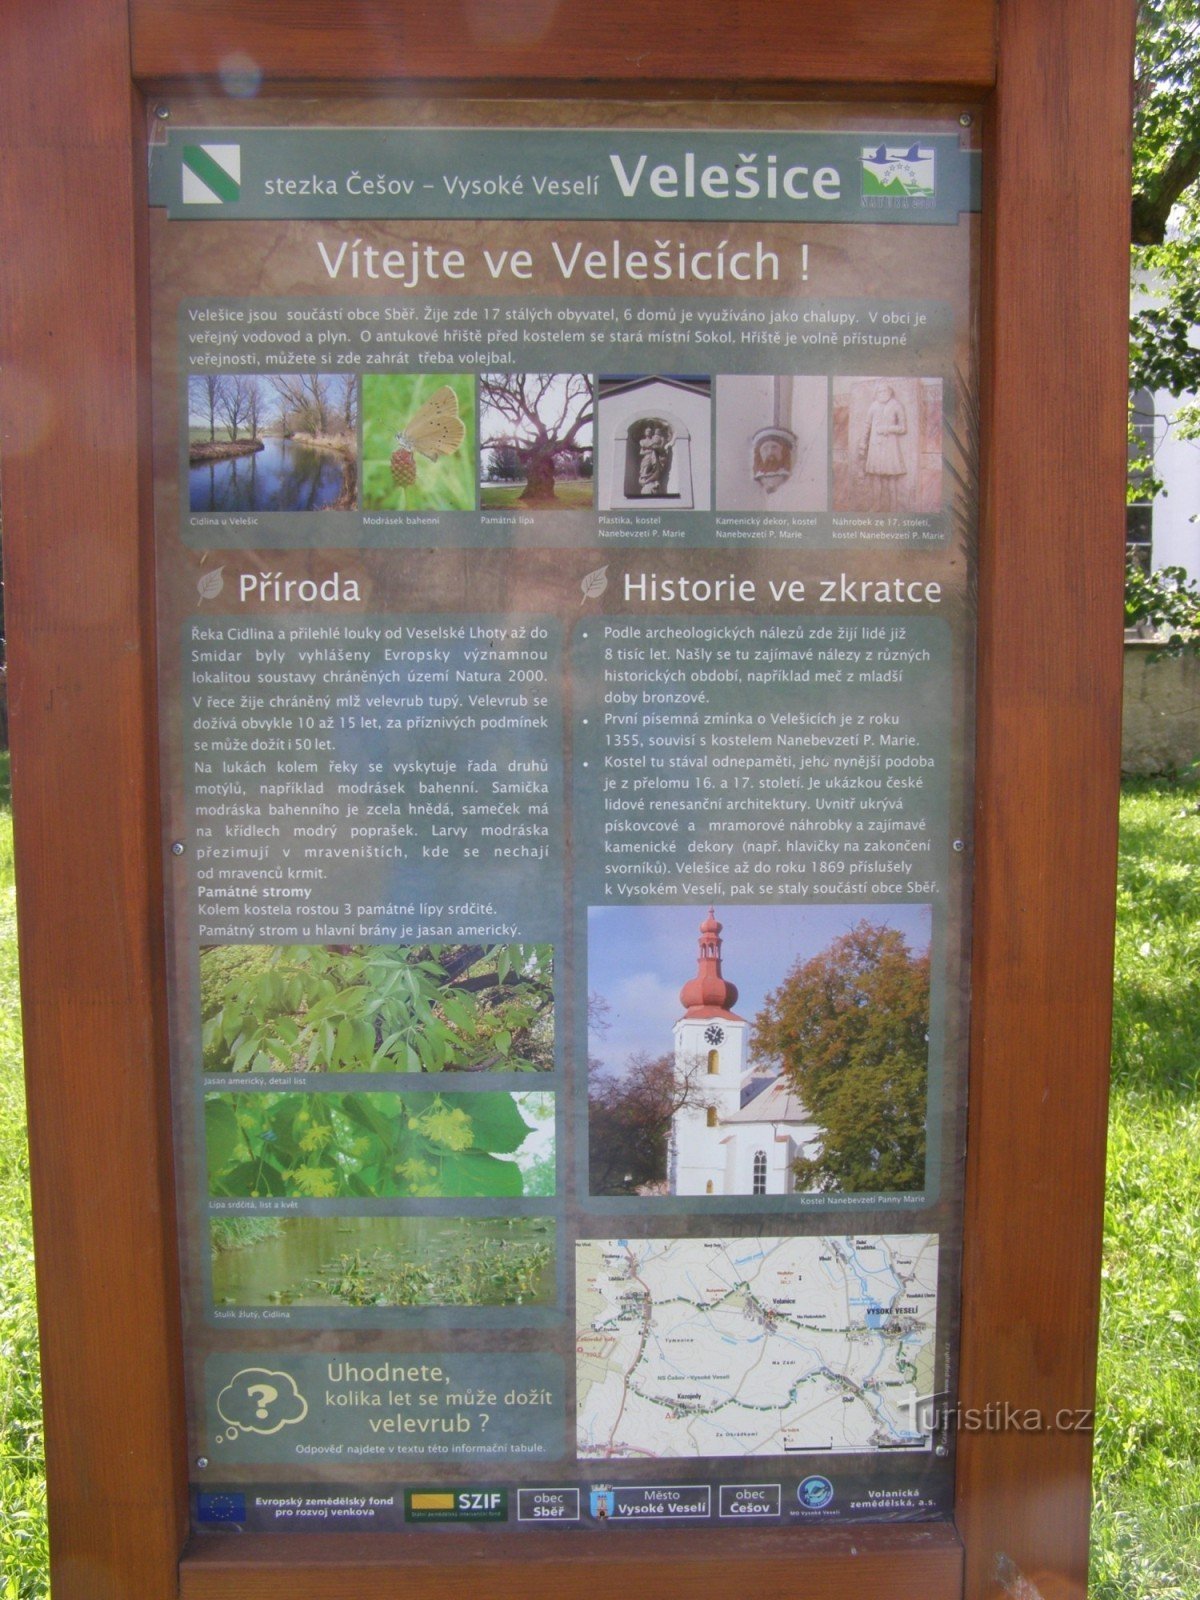 intersection of NS Češov-Vysoké Veselí - Velešice